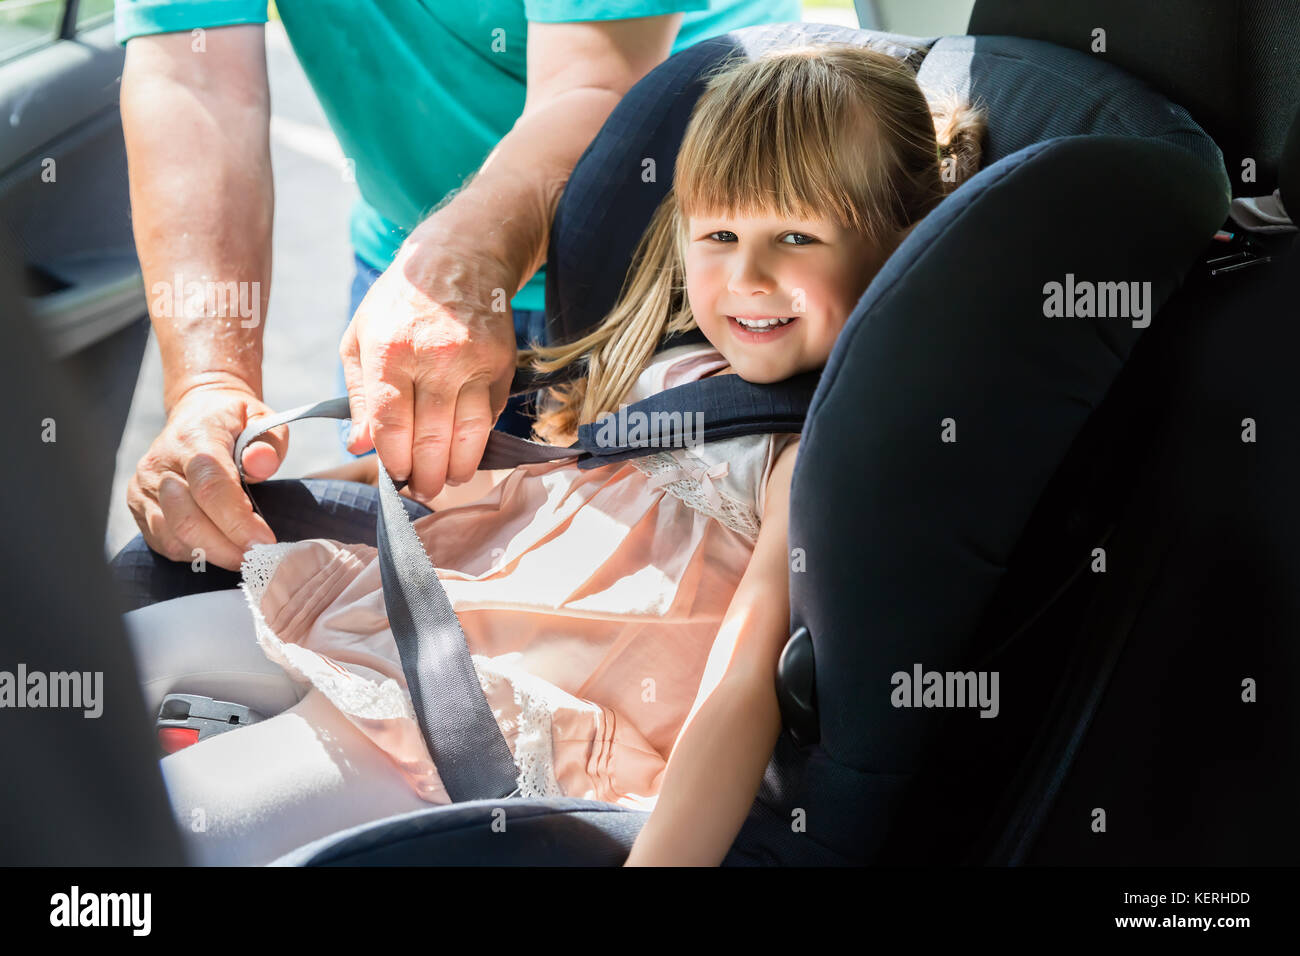 Man knicken Sicherheitsgurt für Kind im Kindersitz im Auto Stockfotografie  - Alamy